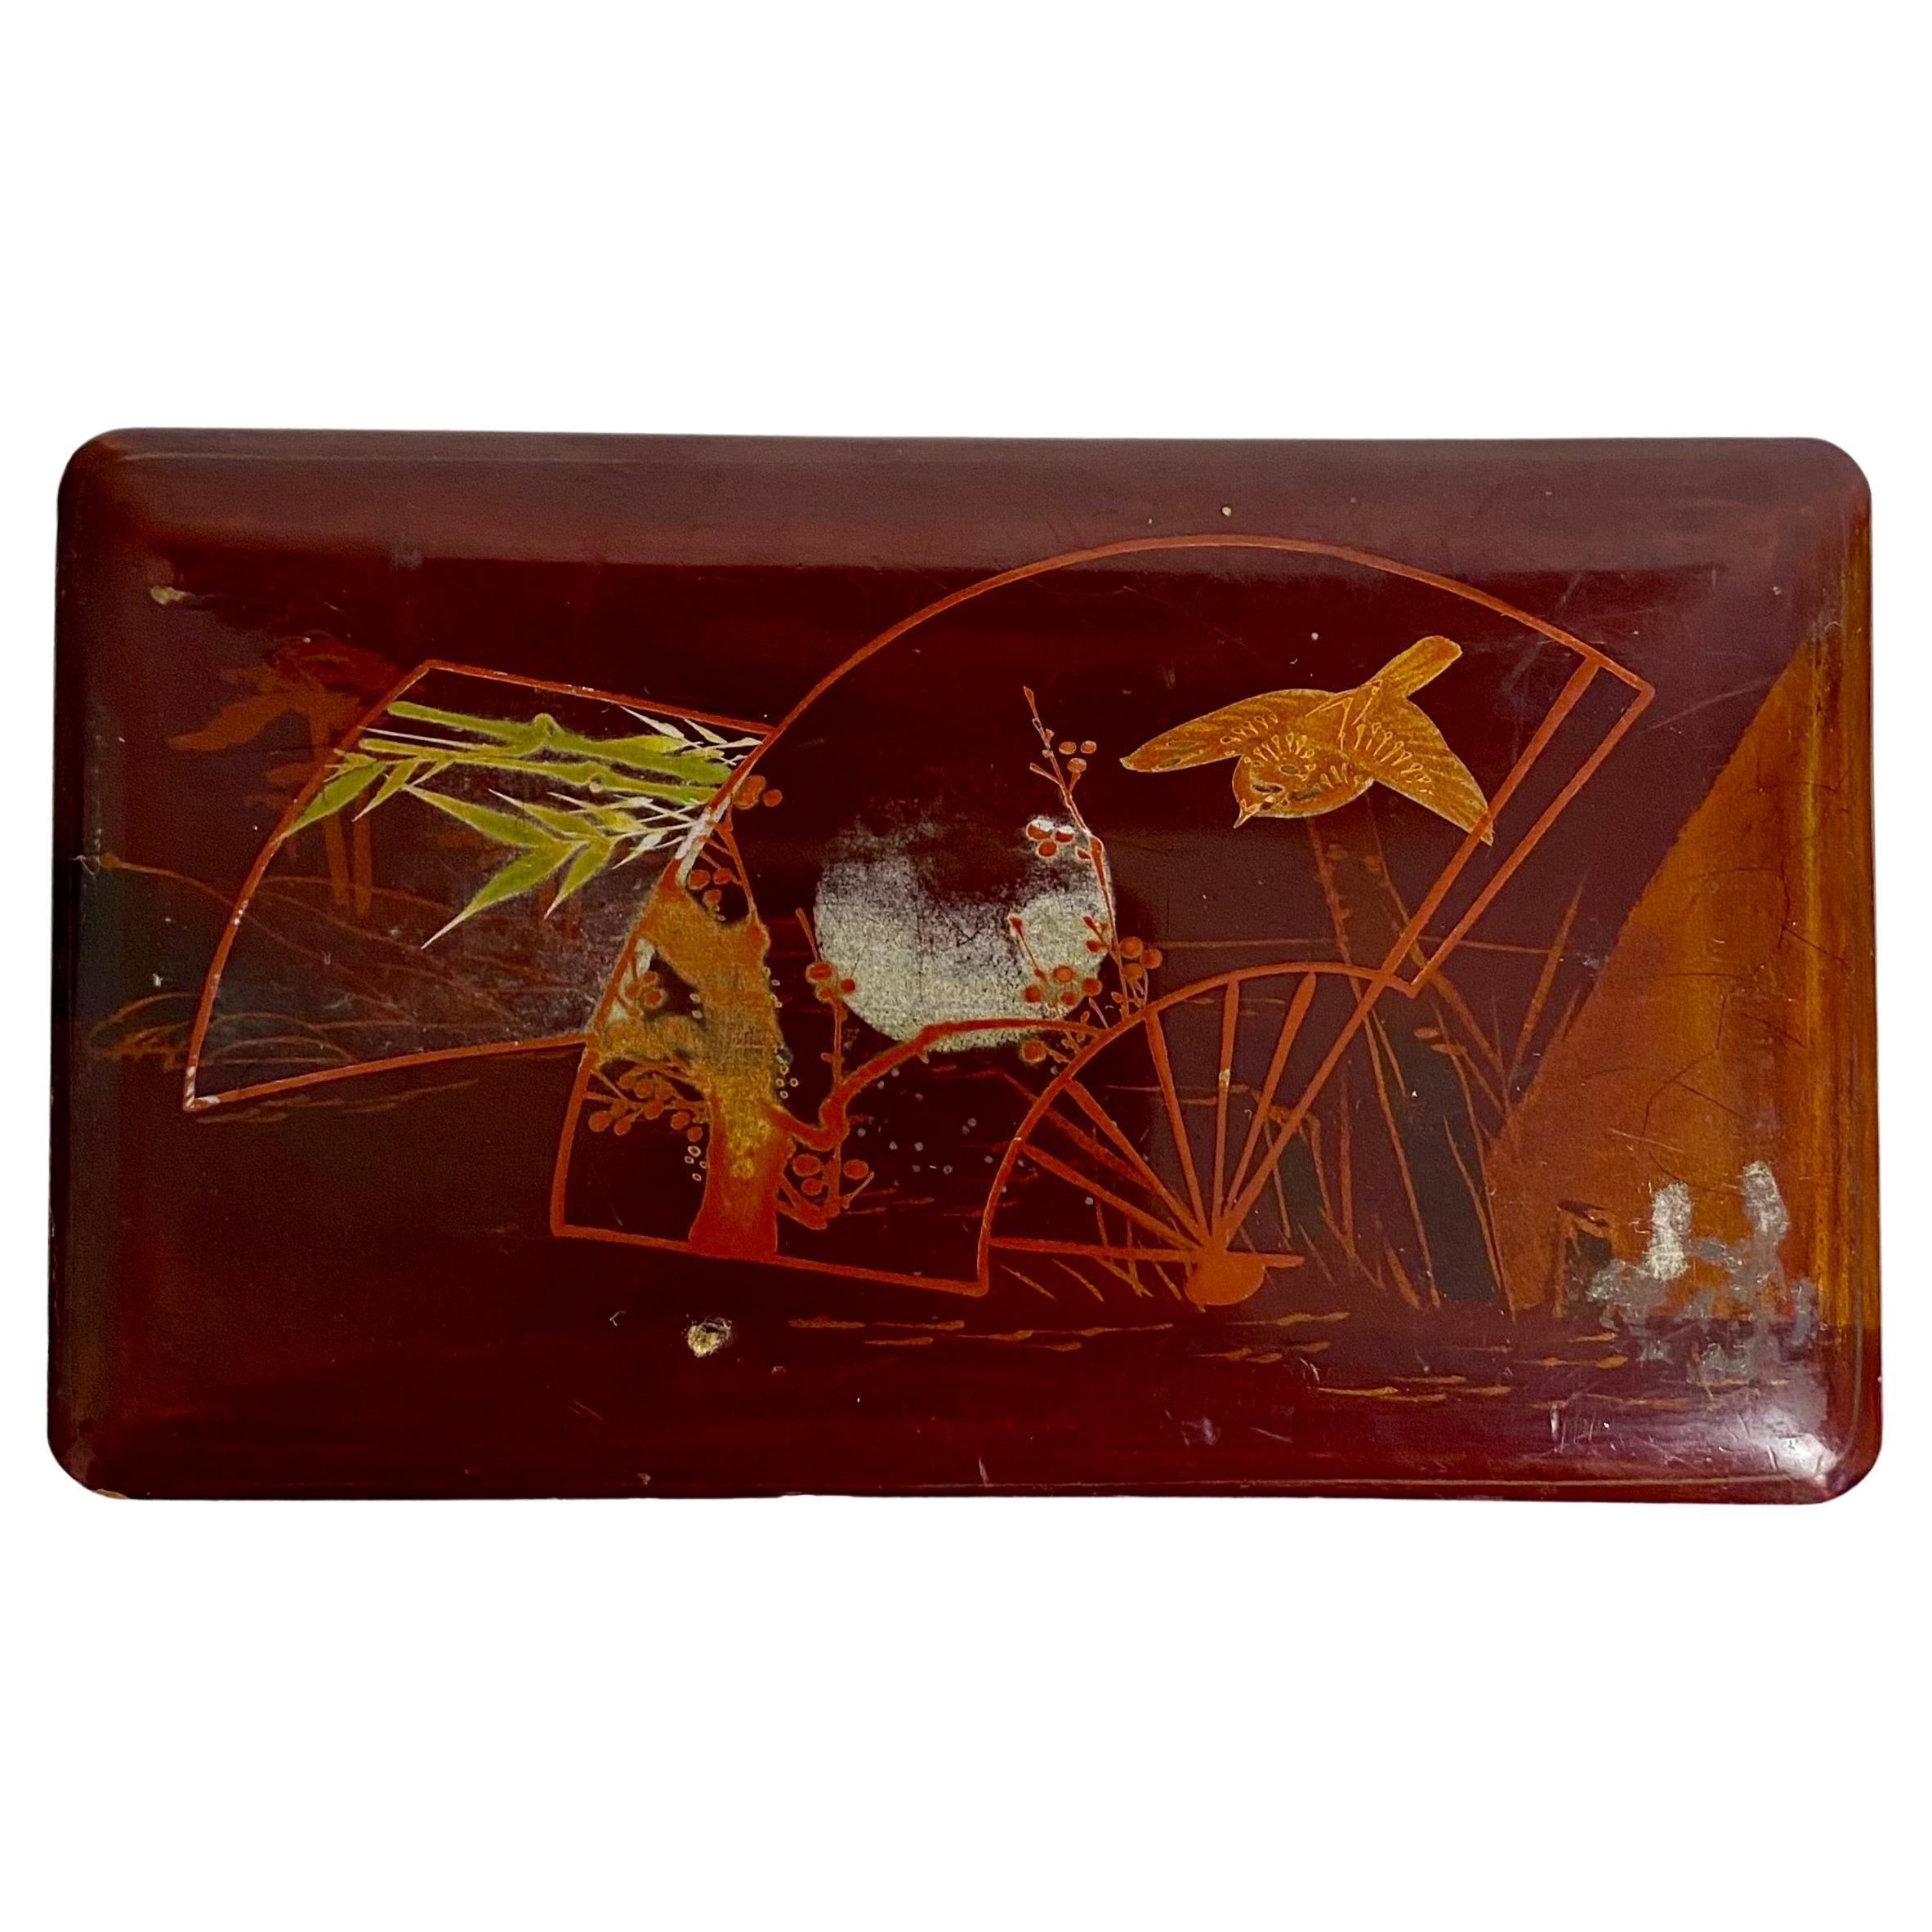 Schöne japanische Kiste aus rot lackiertem Holz;
19. Jahrhundert
Den Deckel ziert eine Landschaft mit einem Vogel, Bäumen und einer untergehenden Sonne. 
Das Innere der Schachtel ist mit einer schwarzen Lackierung versehen.
Kleines Format
Japan Ende